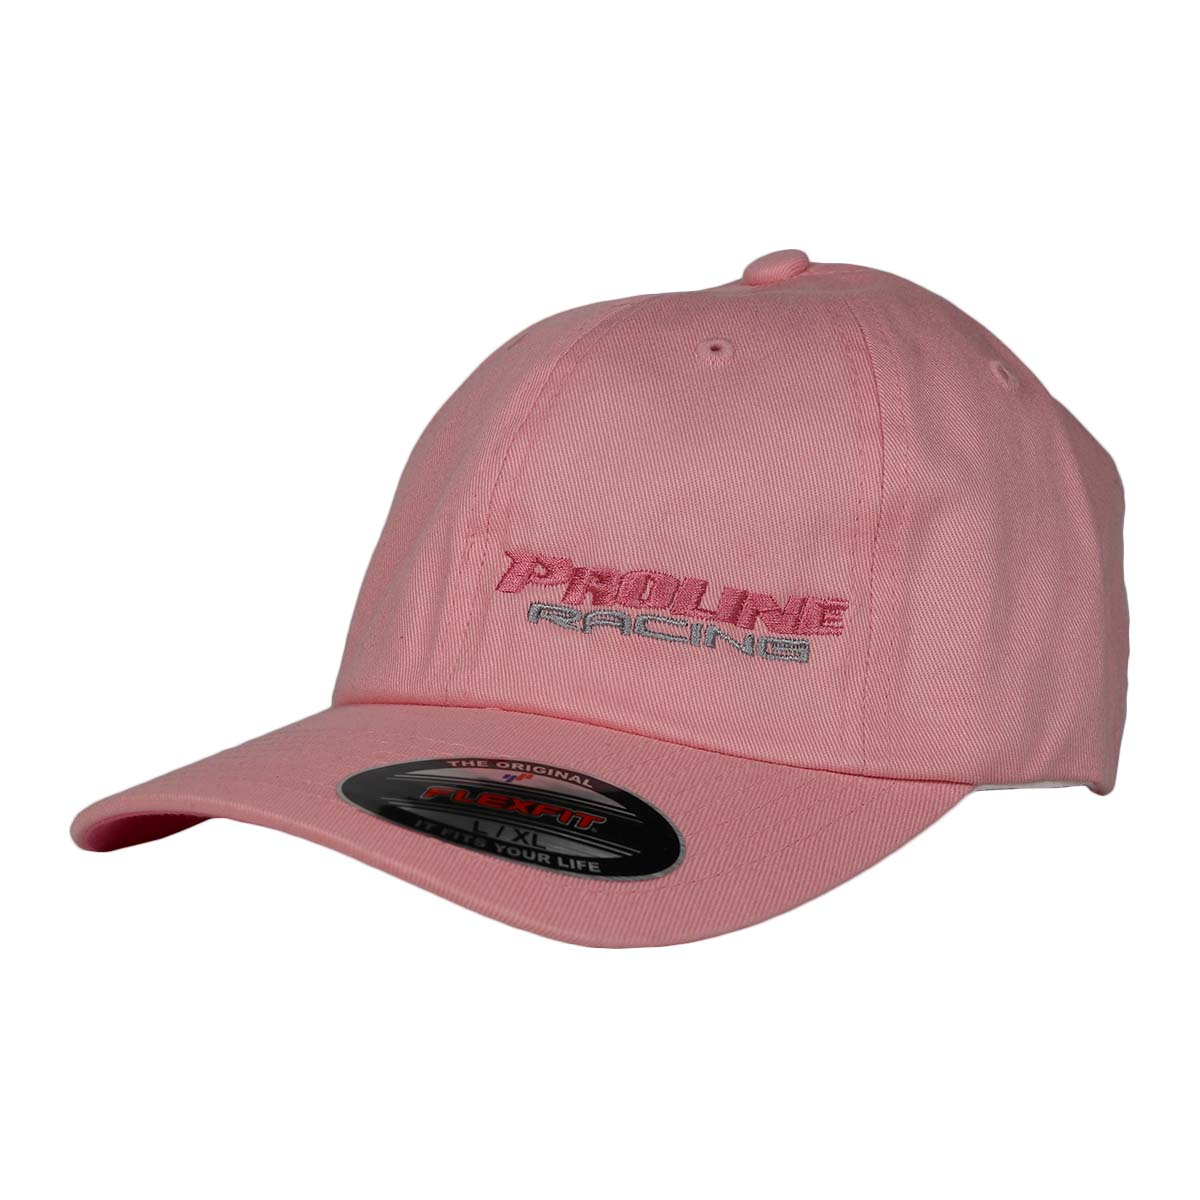 PLR FLEXFIT HAT - BLACK HAT W/ PINK LETTERING - Pro Line Racing